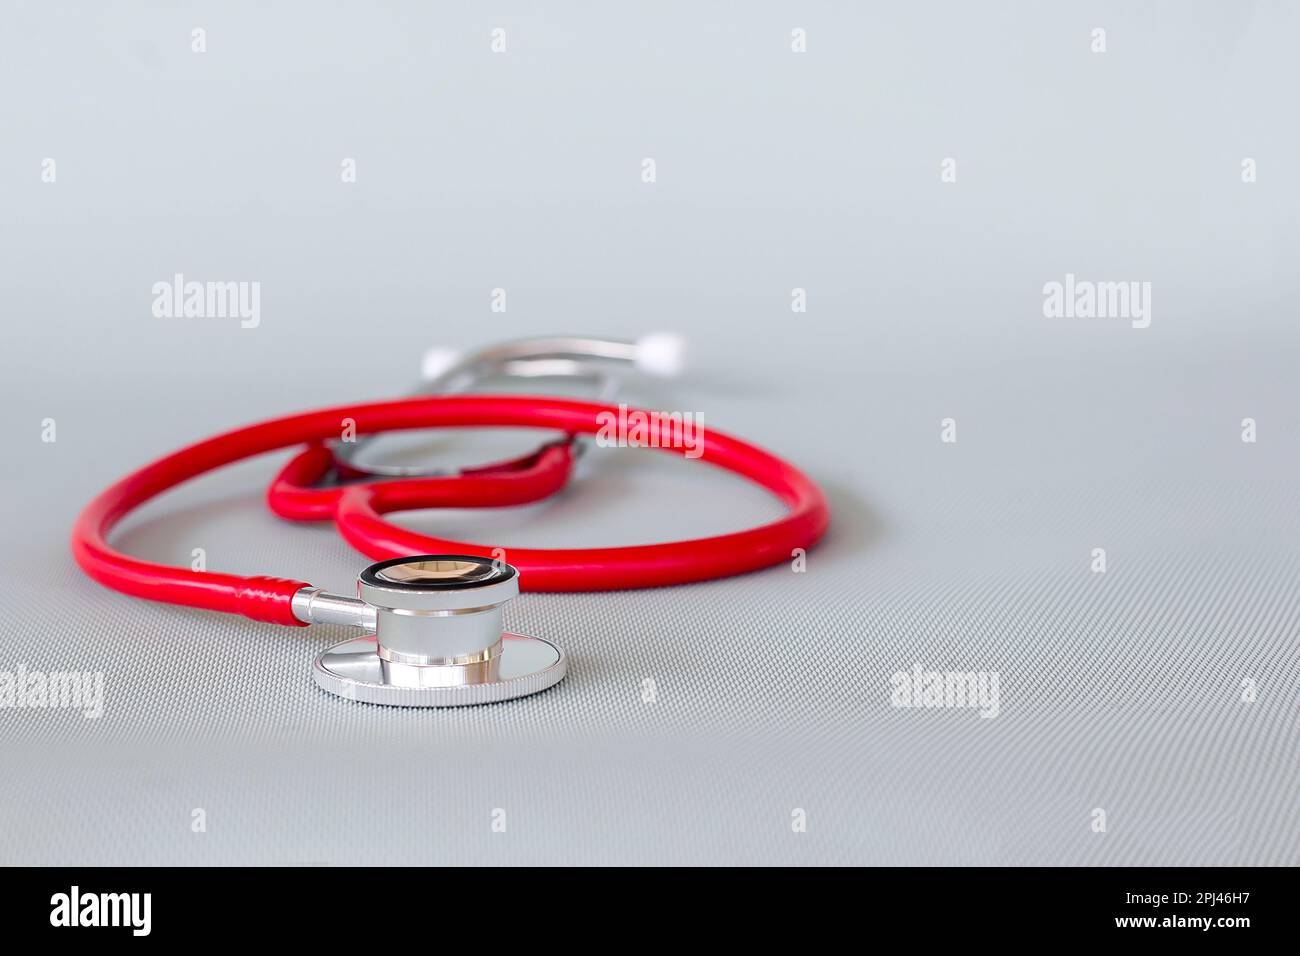 Rotes Stethoskop auf blauem Hintergrund, Gesundheitskonzept. Stockfoto